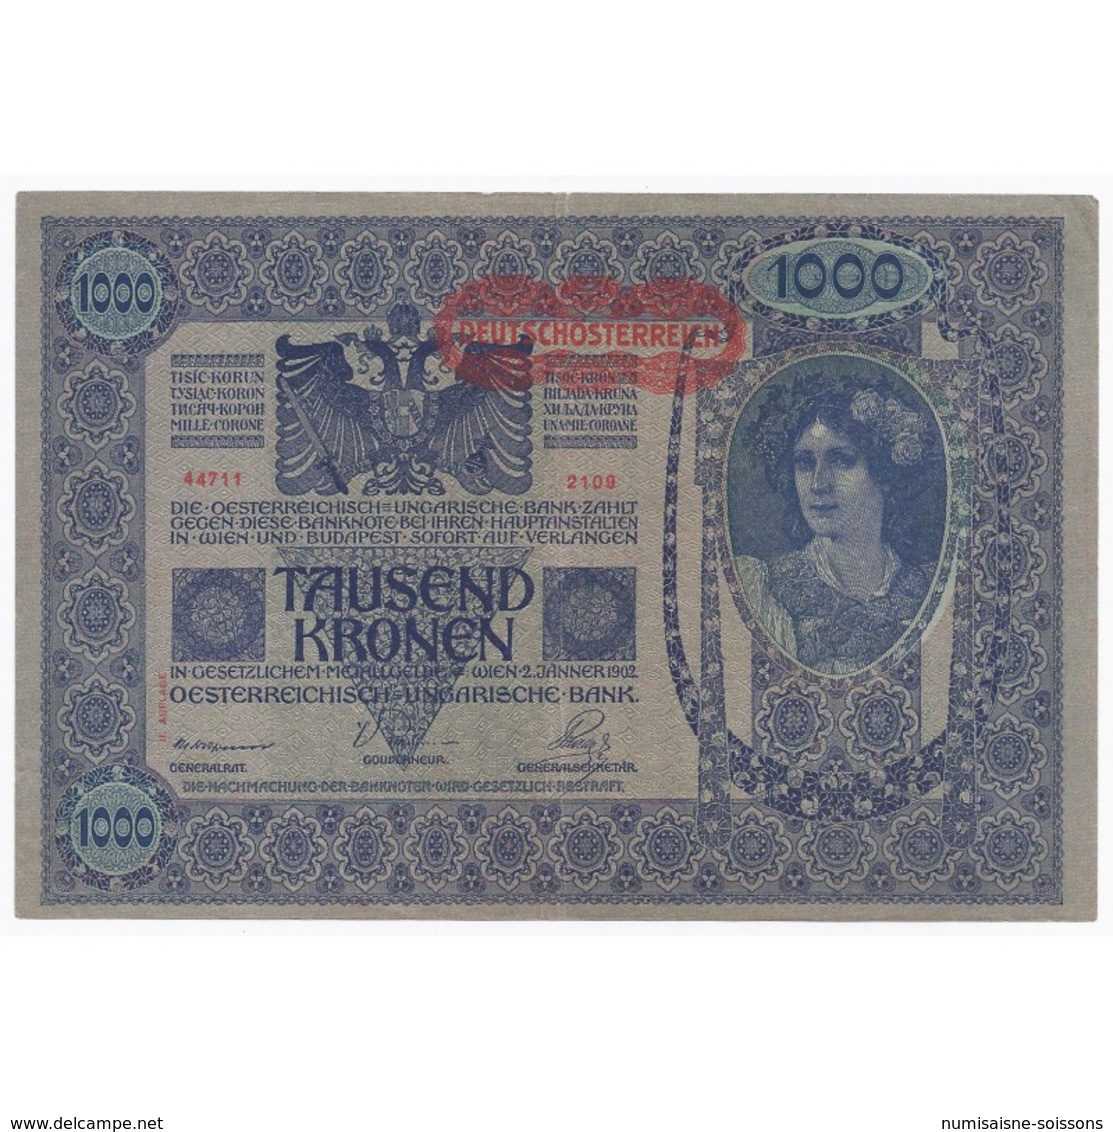 AUTRICHE - PICK 61 - 1000 KRONEN - ND 1919 - TTB+ - Autriche